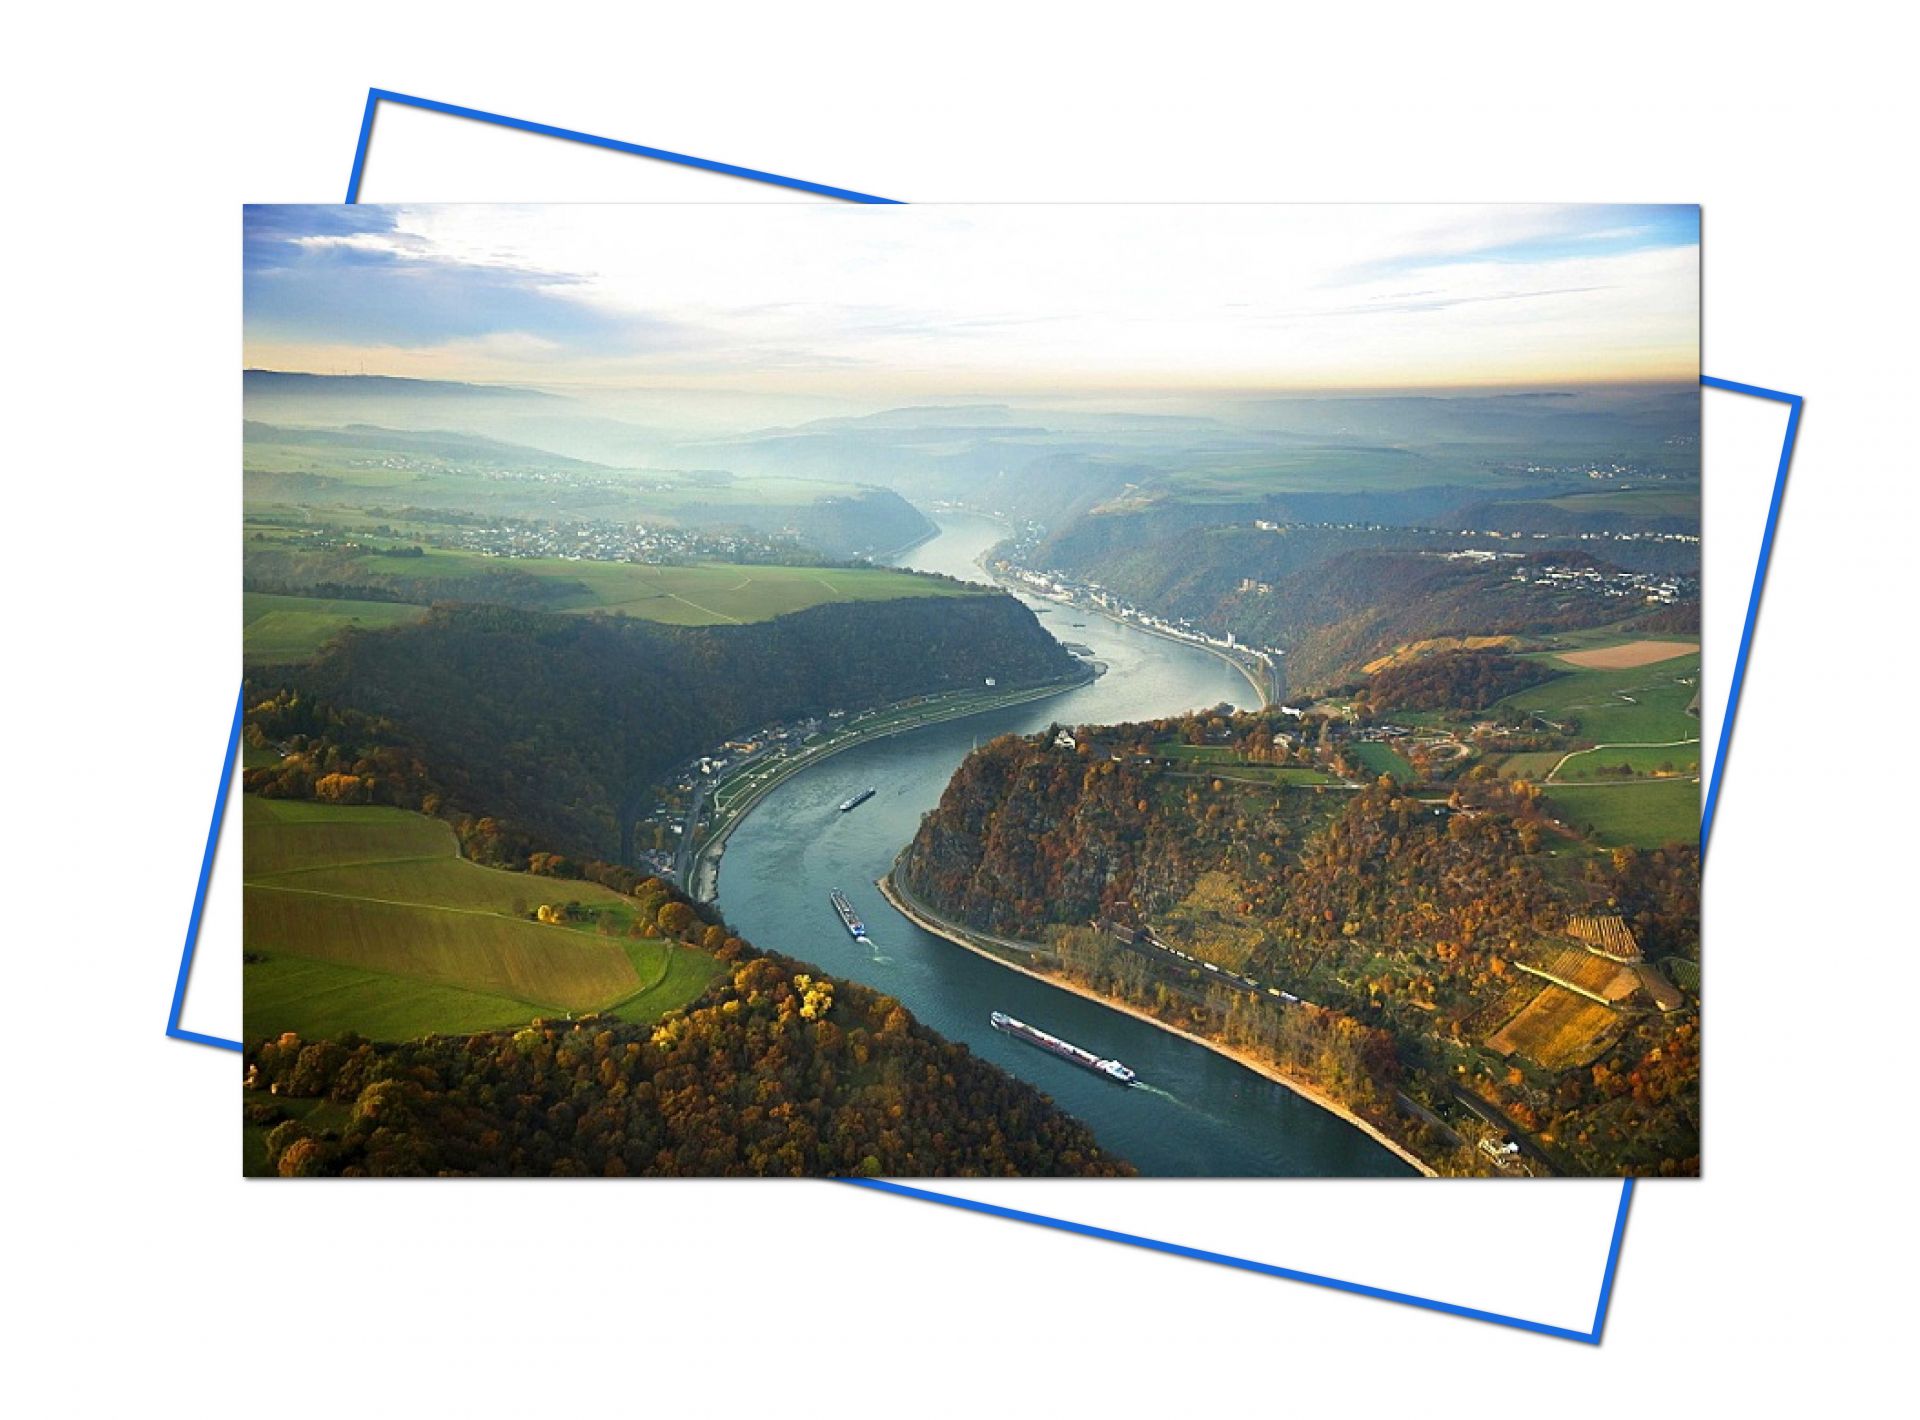 Thác nước sông Rhine không chỉ là một điểm tham quan nổi tiếng của Thụy Sĩ, thu hút hàng triệu du khách ghé thăm bởi vẻ đẹp hùng vĩ và hoang sơ mà nơi đây còn sở hữu những cảnh quan thiên nhiên và nhân tạo tuyệt đẹp khác. Những cảnh đẹp ngất lòng nơi đây chắc hẳn sẽ không làm bạn thất vọng khi đến với đất nước xinh đẹp này, và chắc hẳn đây sẽ không phải là lần cuối cùng bạn đến đây để chiêm ngưỡng tuyệt tác nức lòng này của mẹ thiên nhiên!